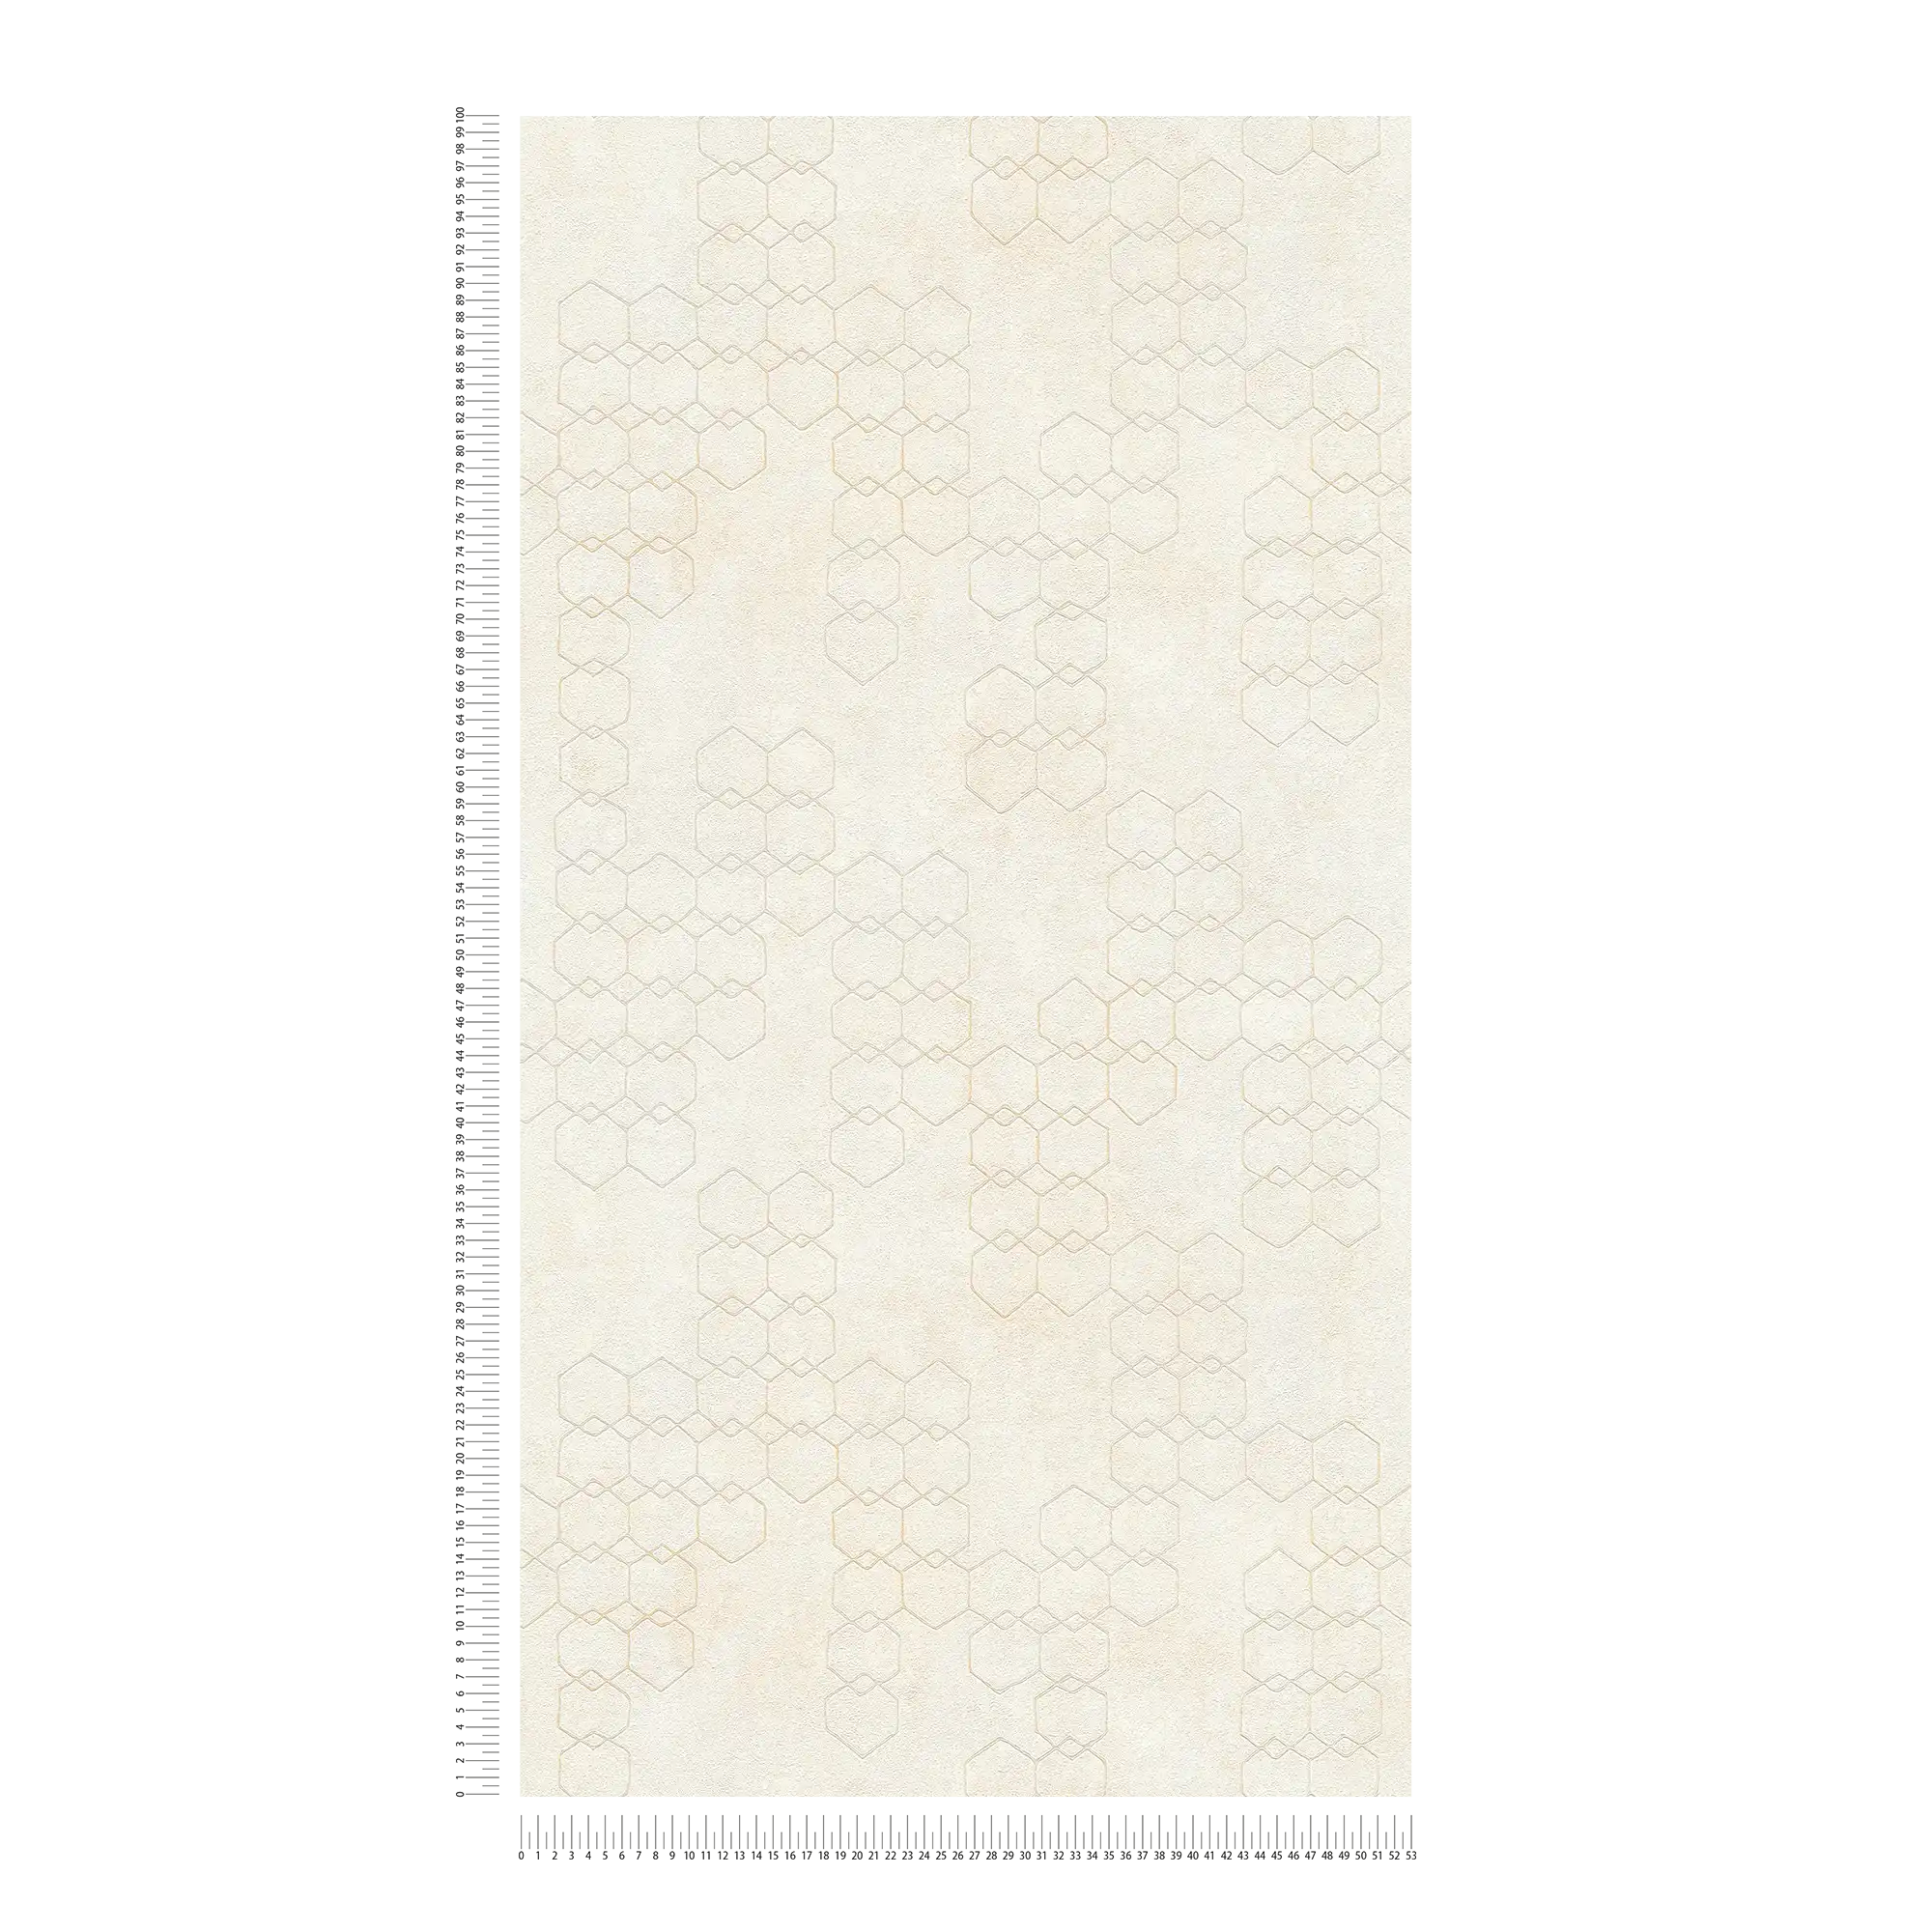             Carta da parati con motivi geometrici in stile industriale - crema, grigio, bianco
        